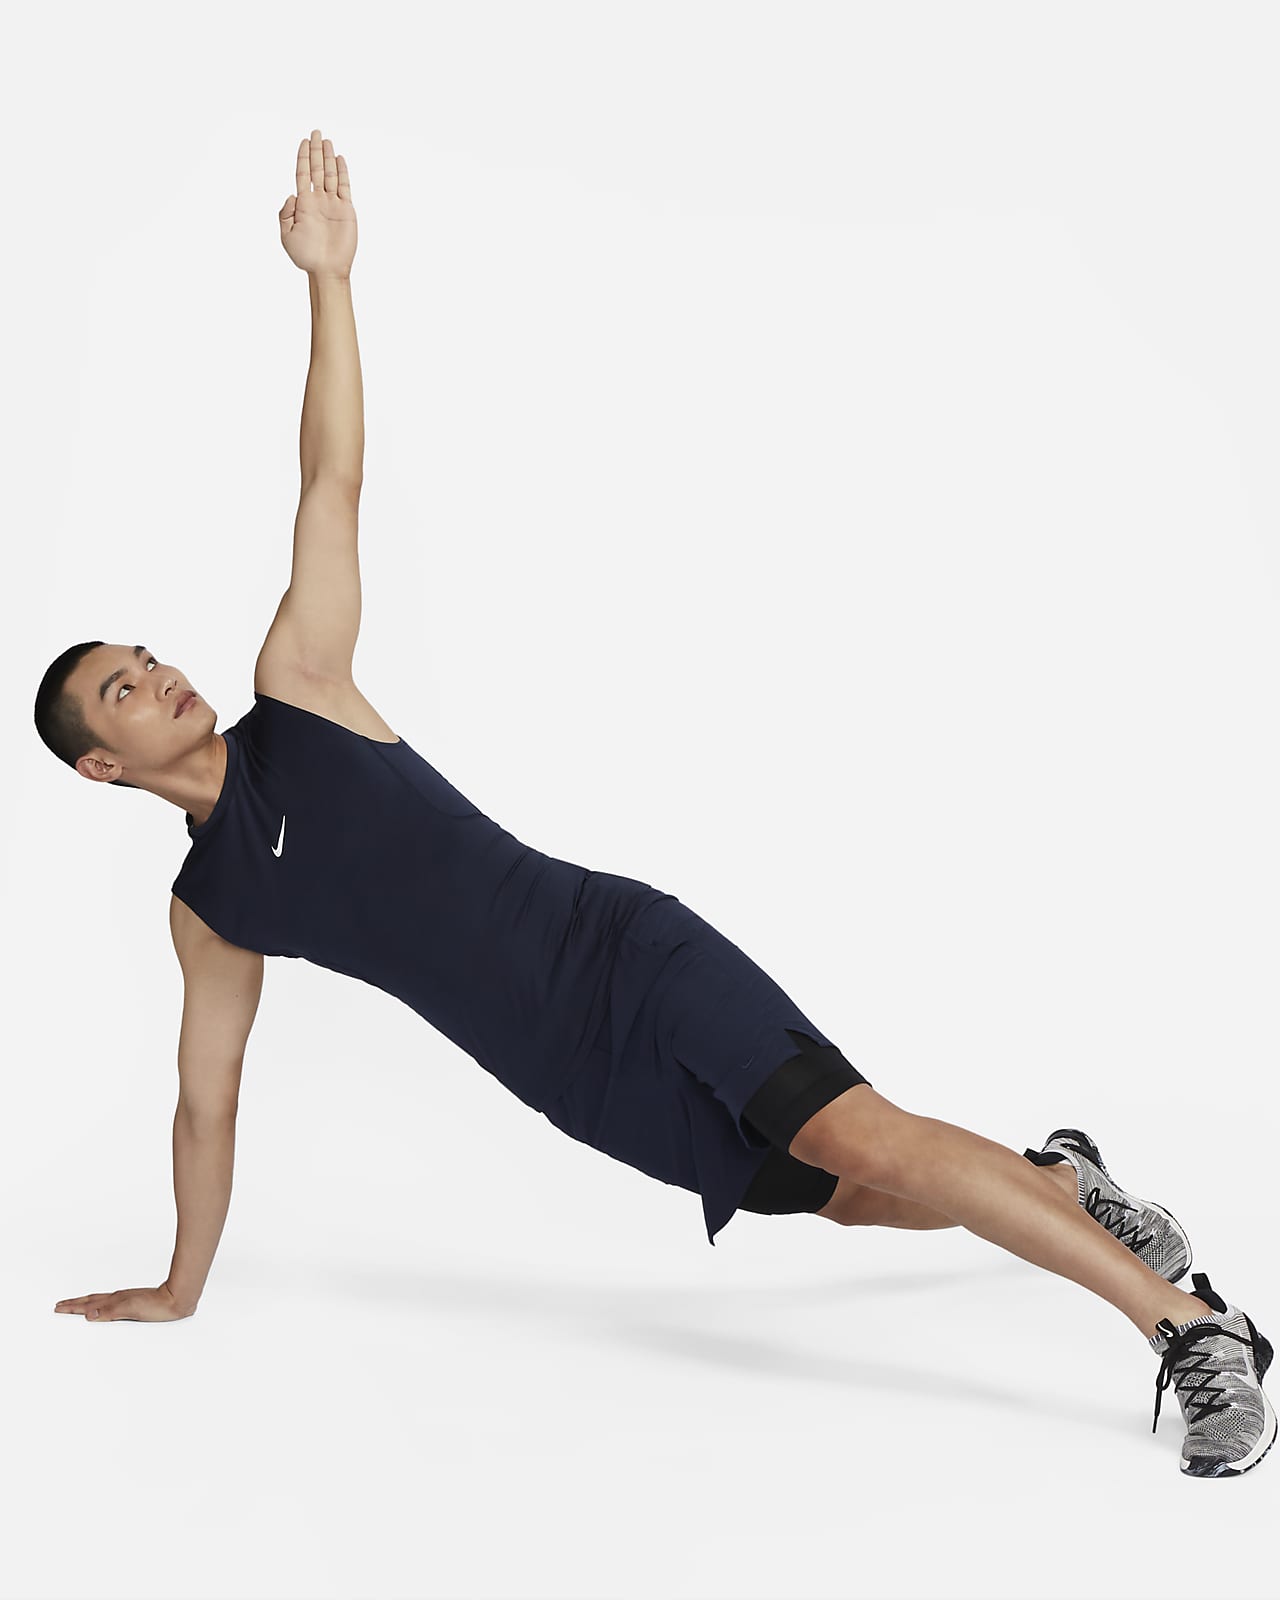 Nike Pro Men's Dri-FIT Tight Sleeveless Fitness Top. Nike PH